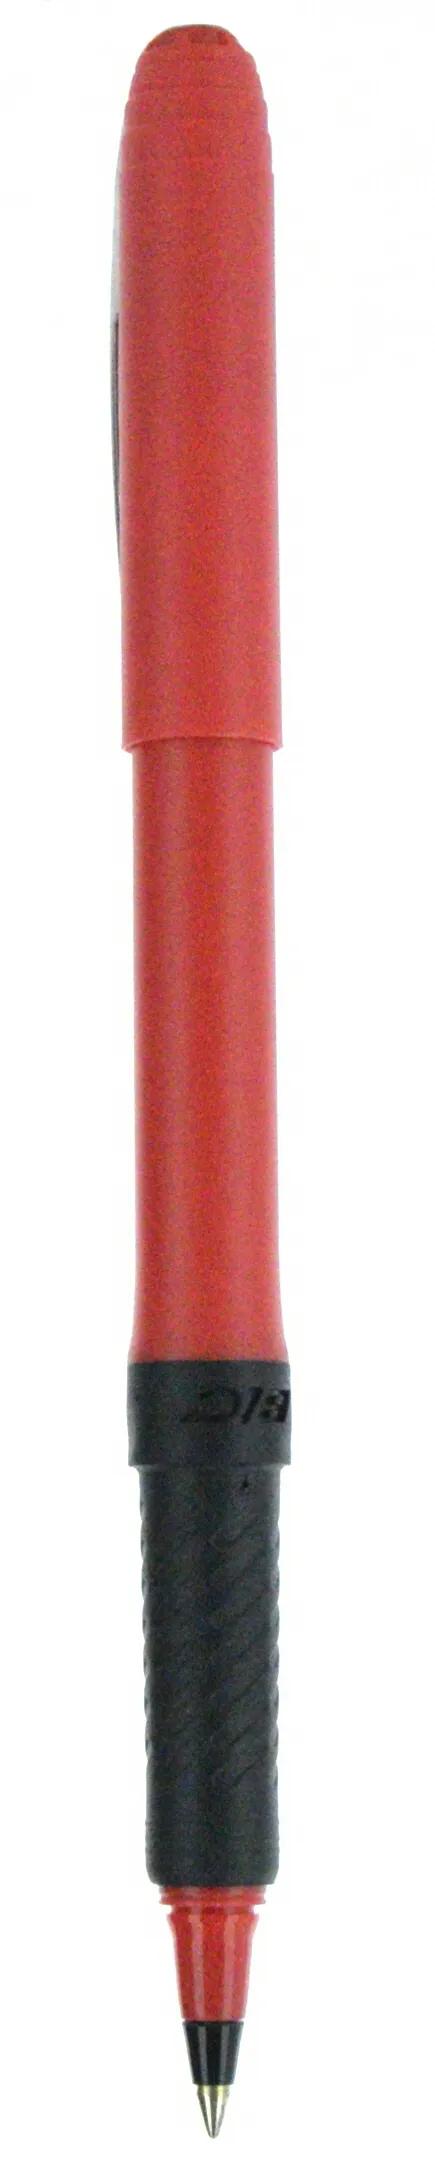 BIC® Grip Roller Pen 131 of 147